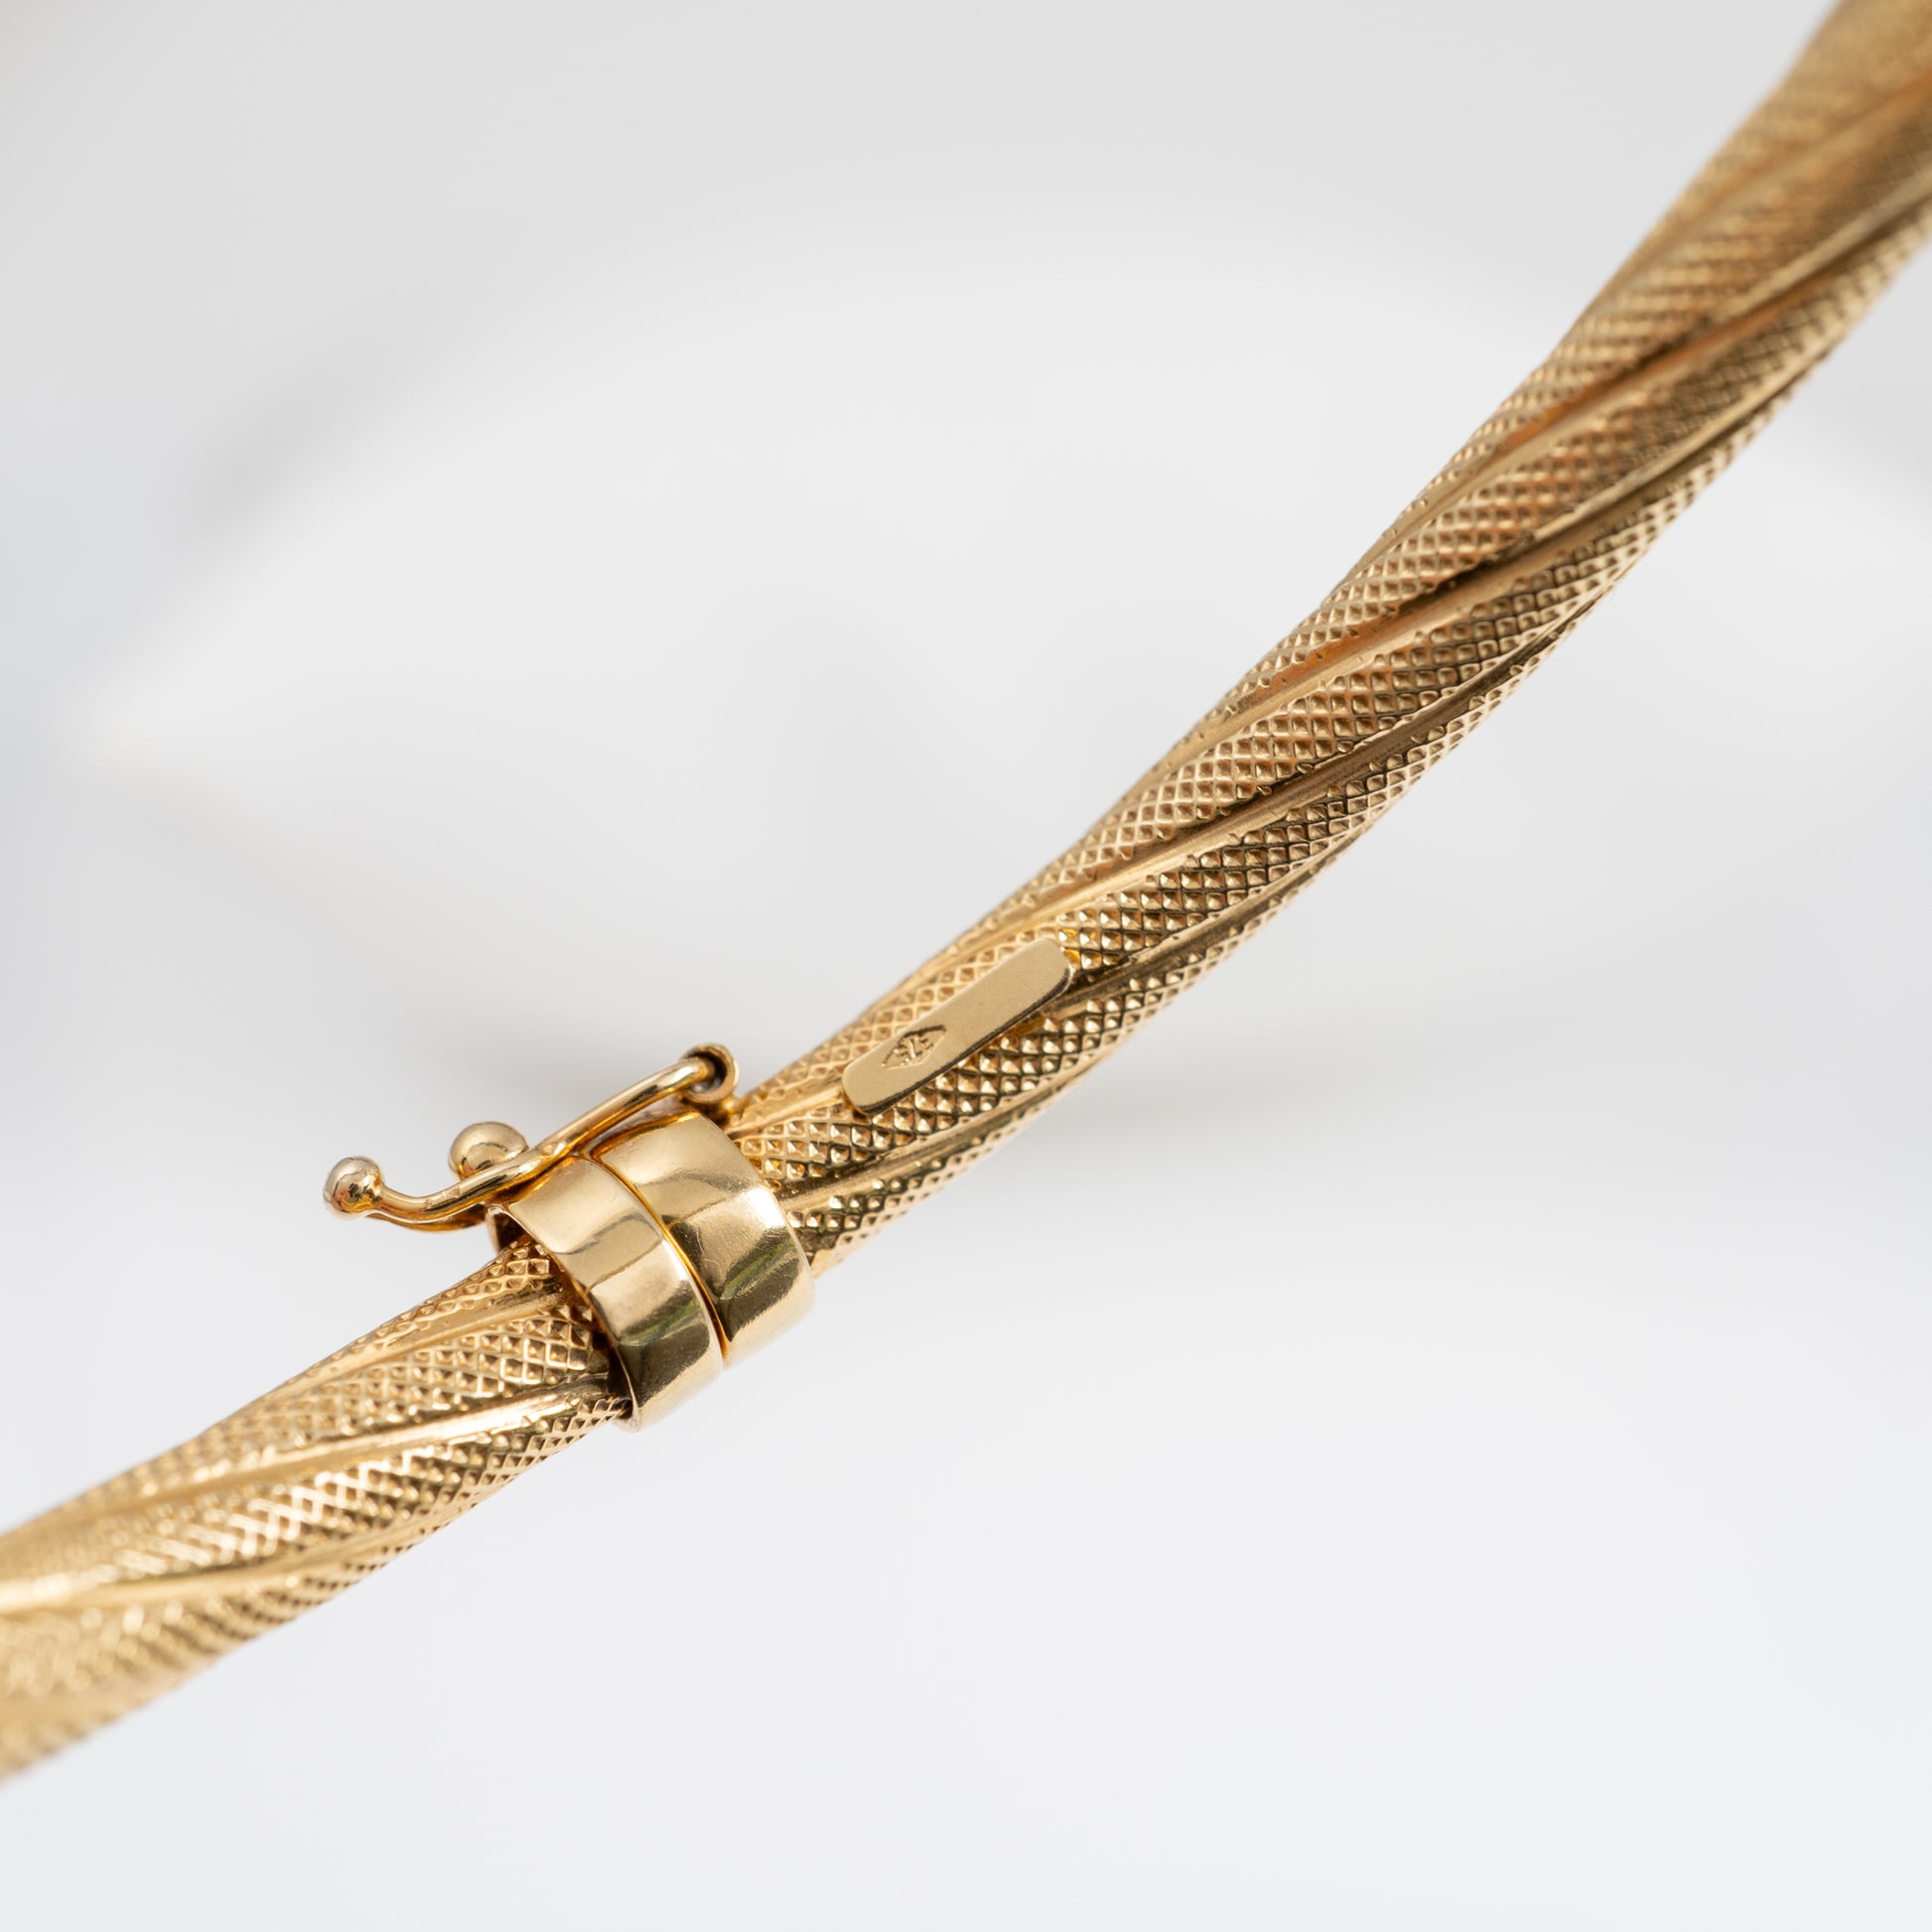 Vintage-inspired 9ct gold bangle bracelet